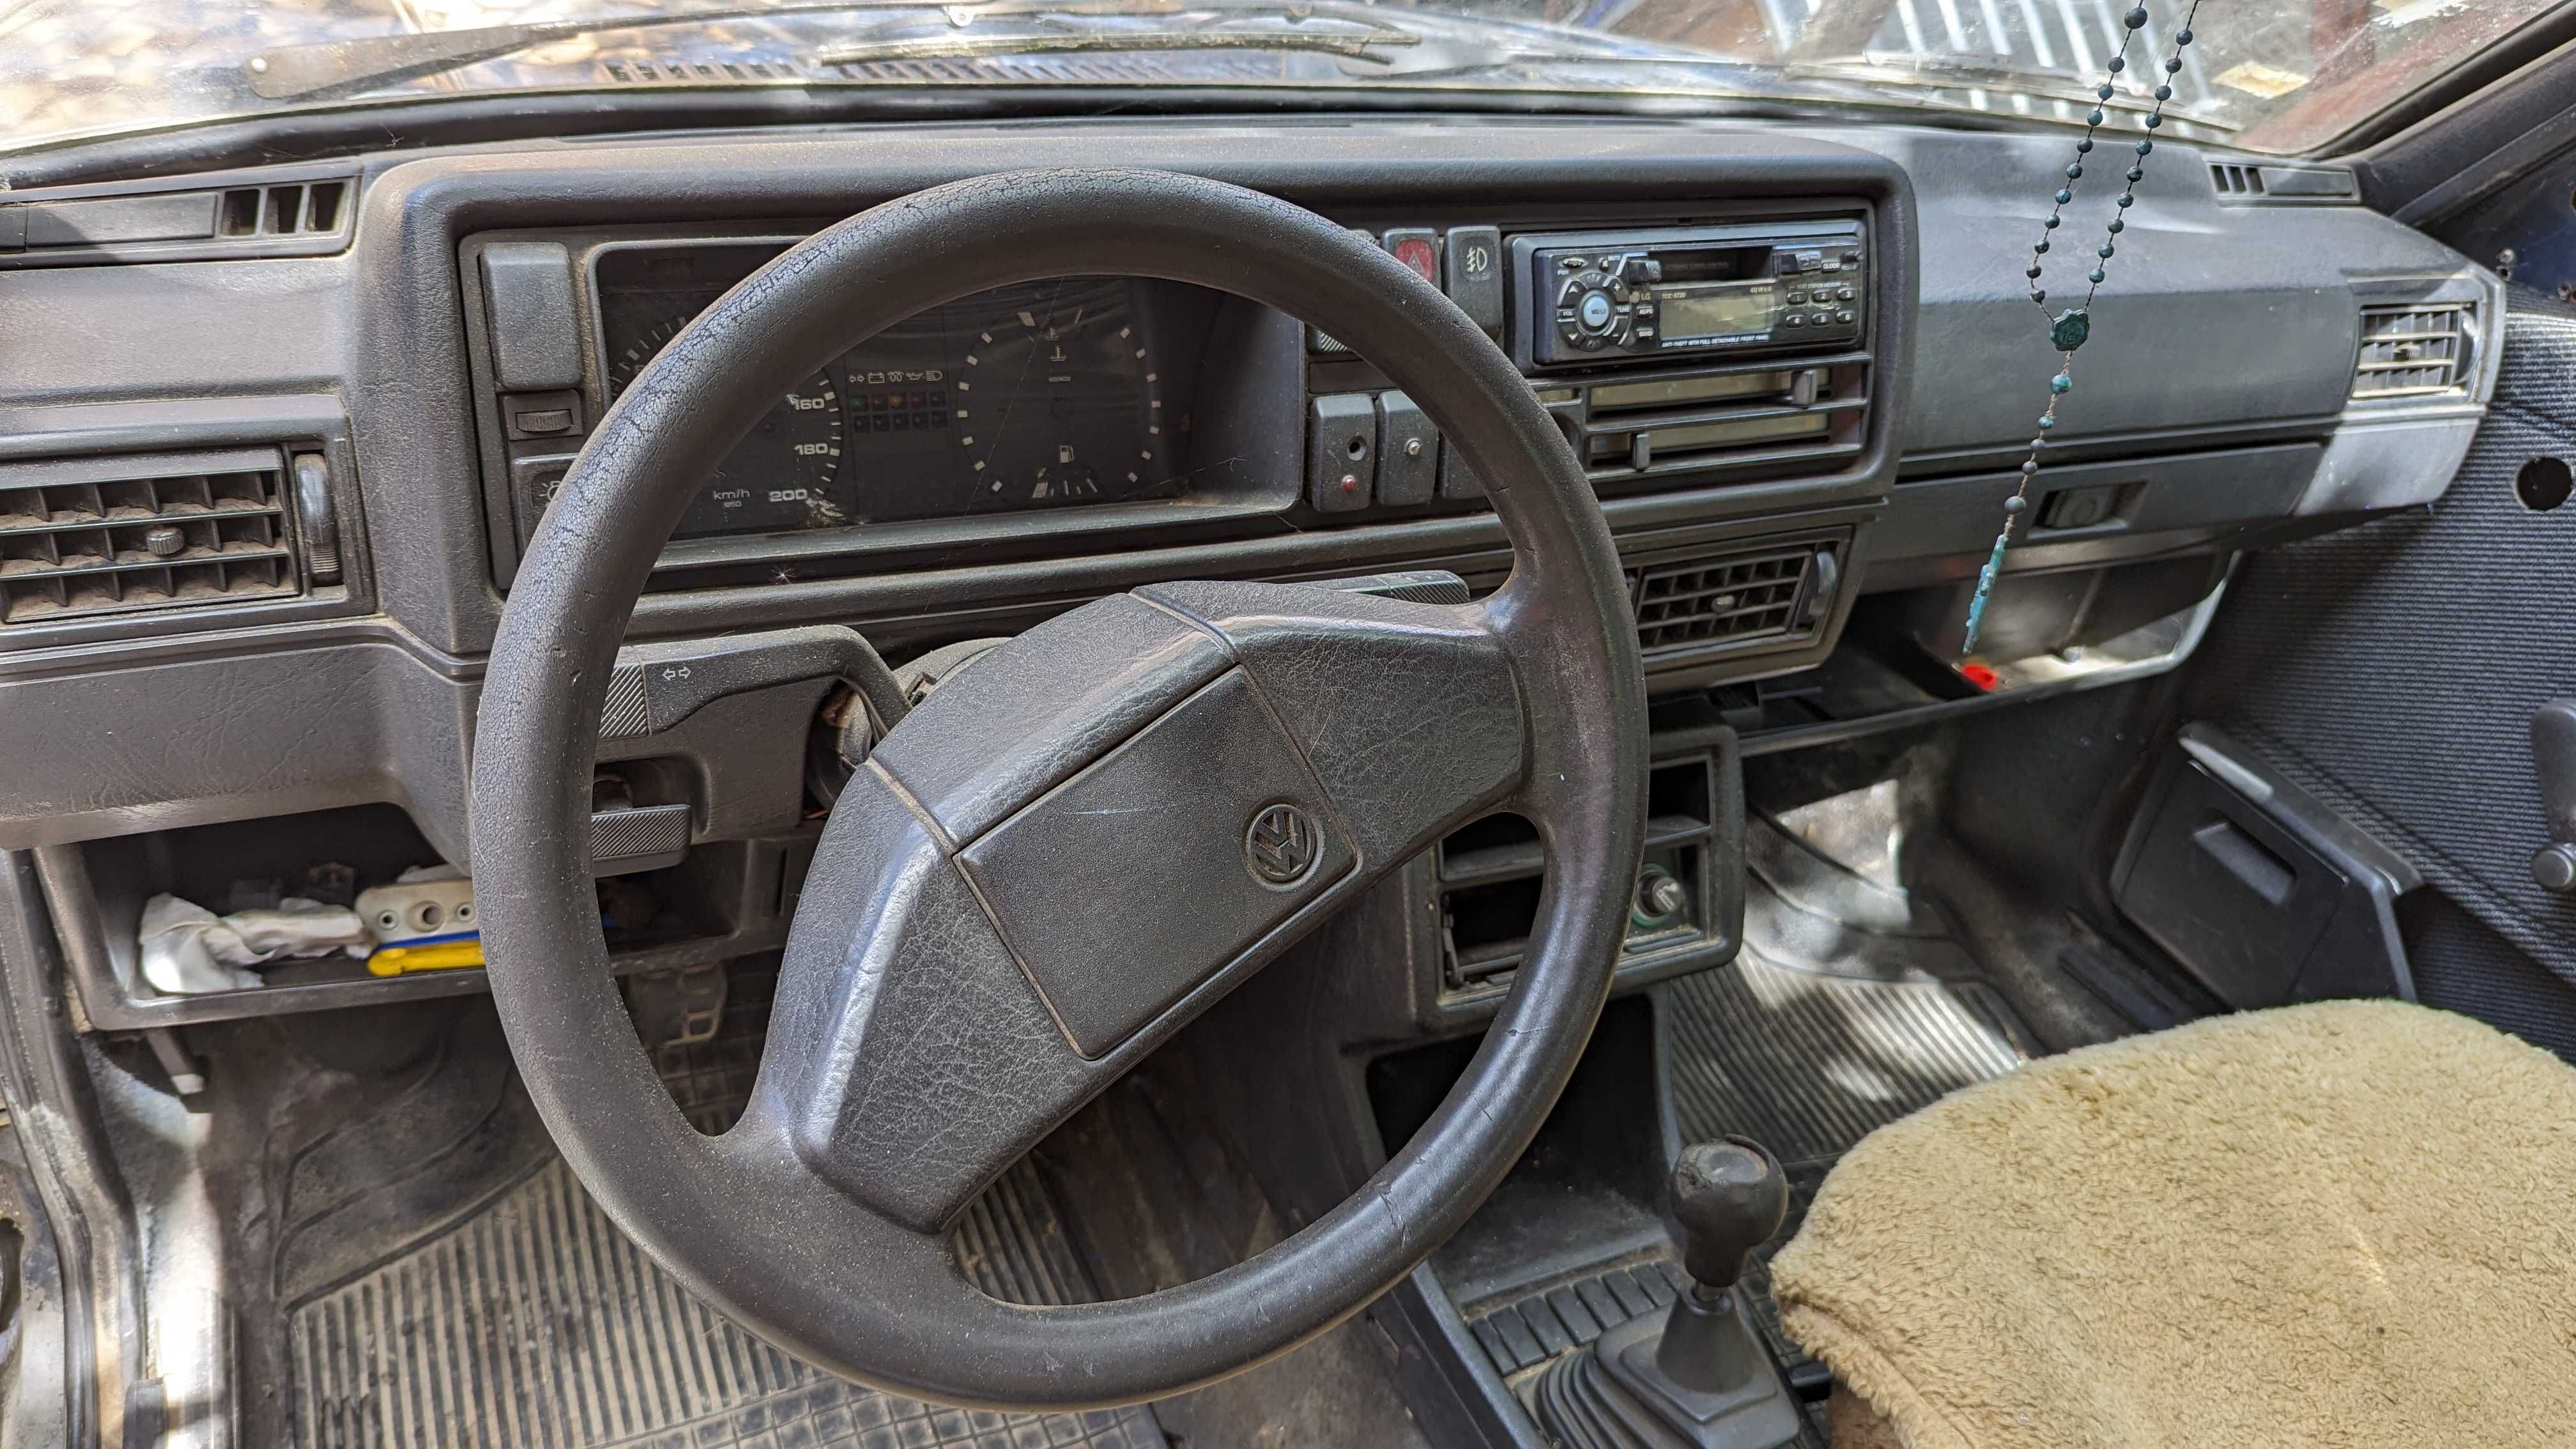 VW Jetta 1.6 turbodisel, 1988